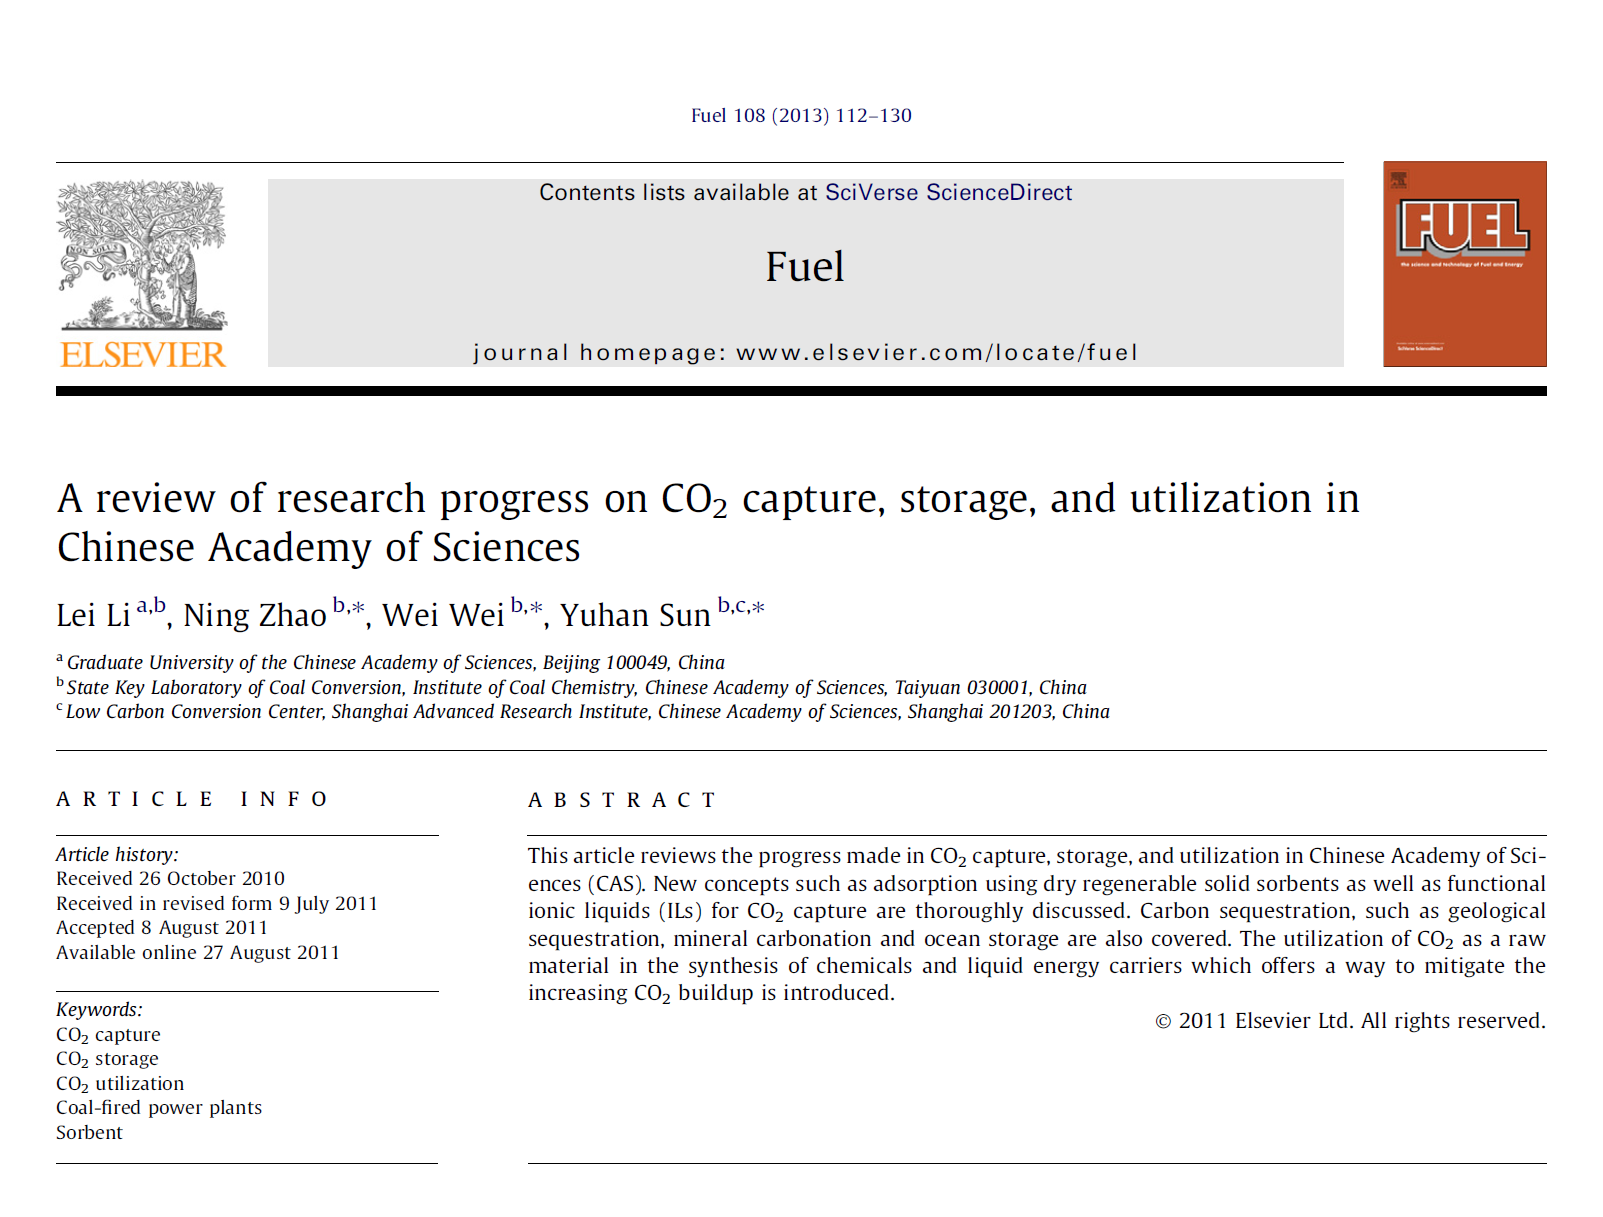 تصویر از مروری بر دستاوردهای تحقیقاتی اخیر فرایندهای جذب، ذخیره و استفاده از CO2